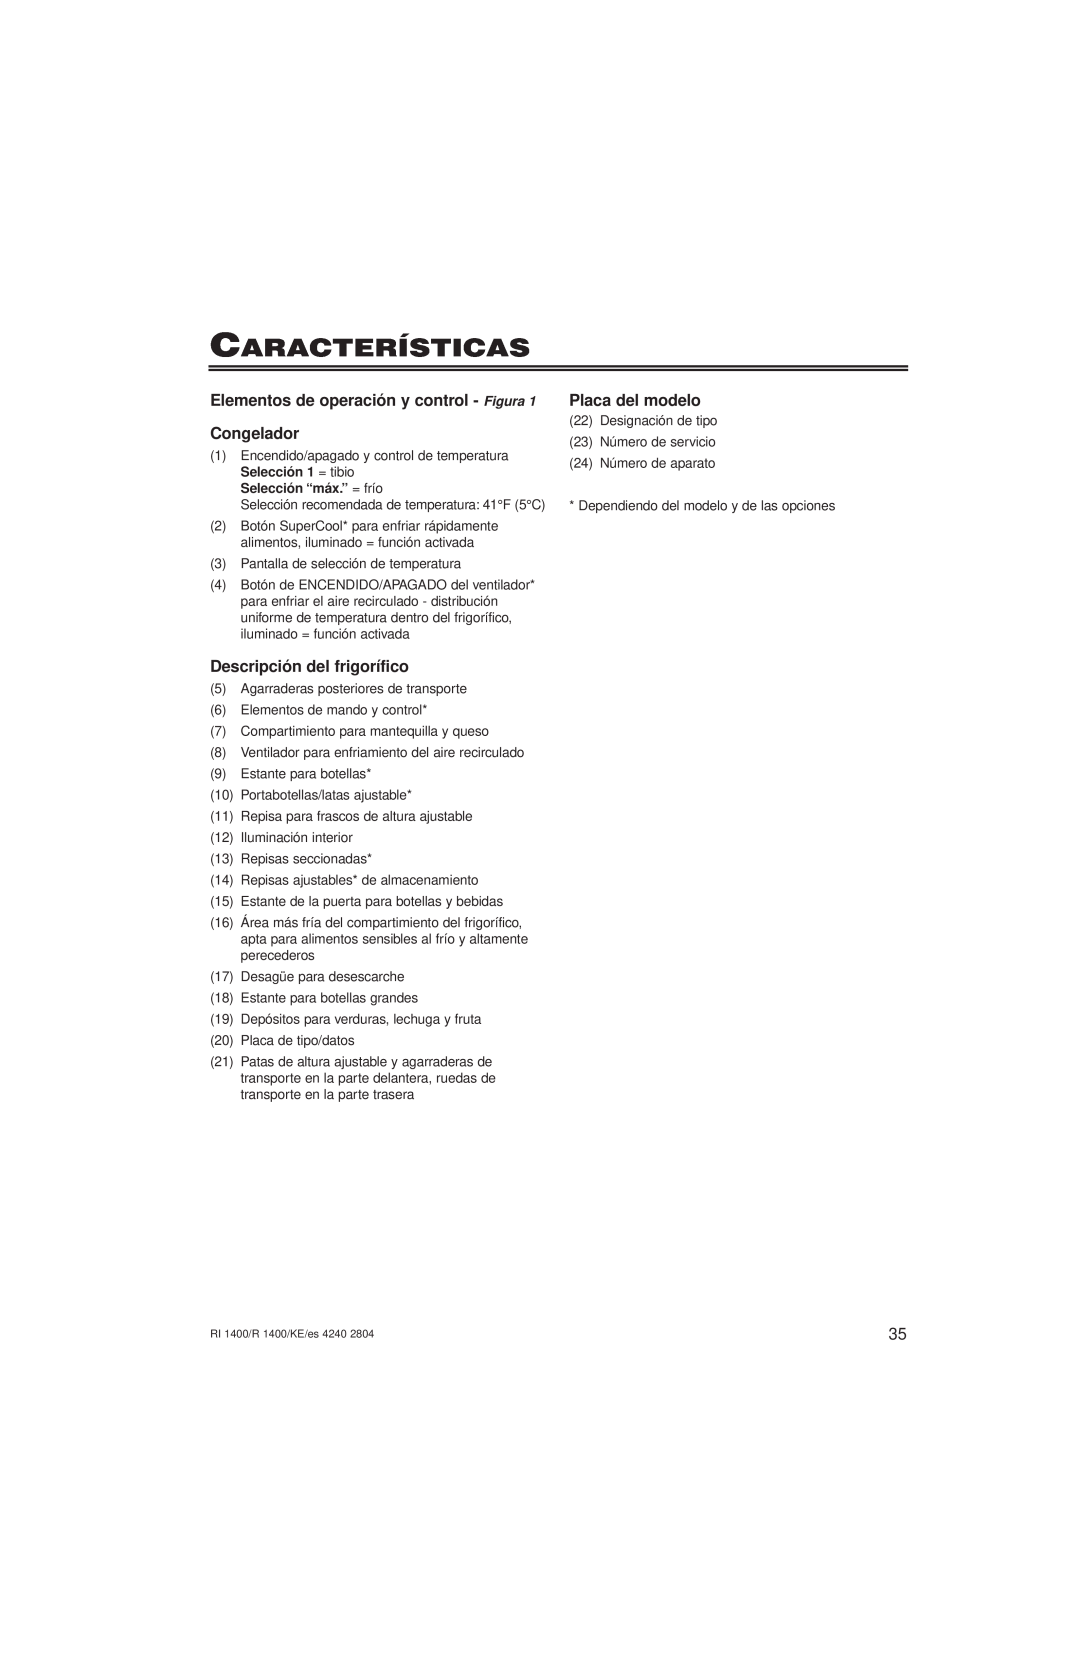 Liebherr 7082 246-00 Características, Elementos de operación y control - Figura, Congelador, Descripción del frigorífico 